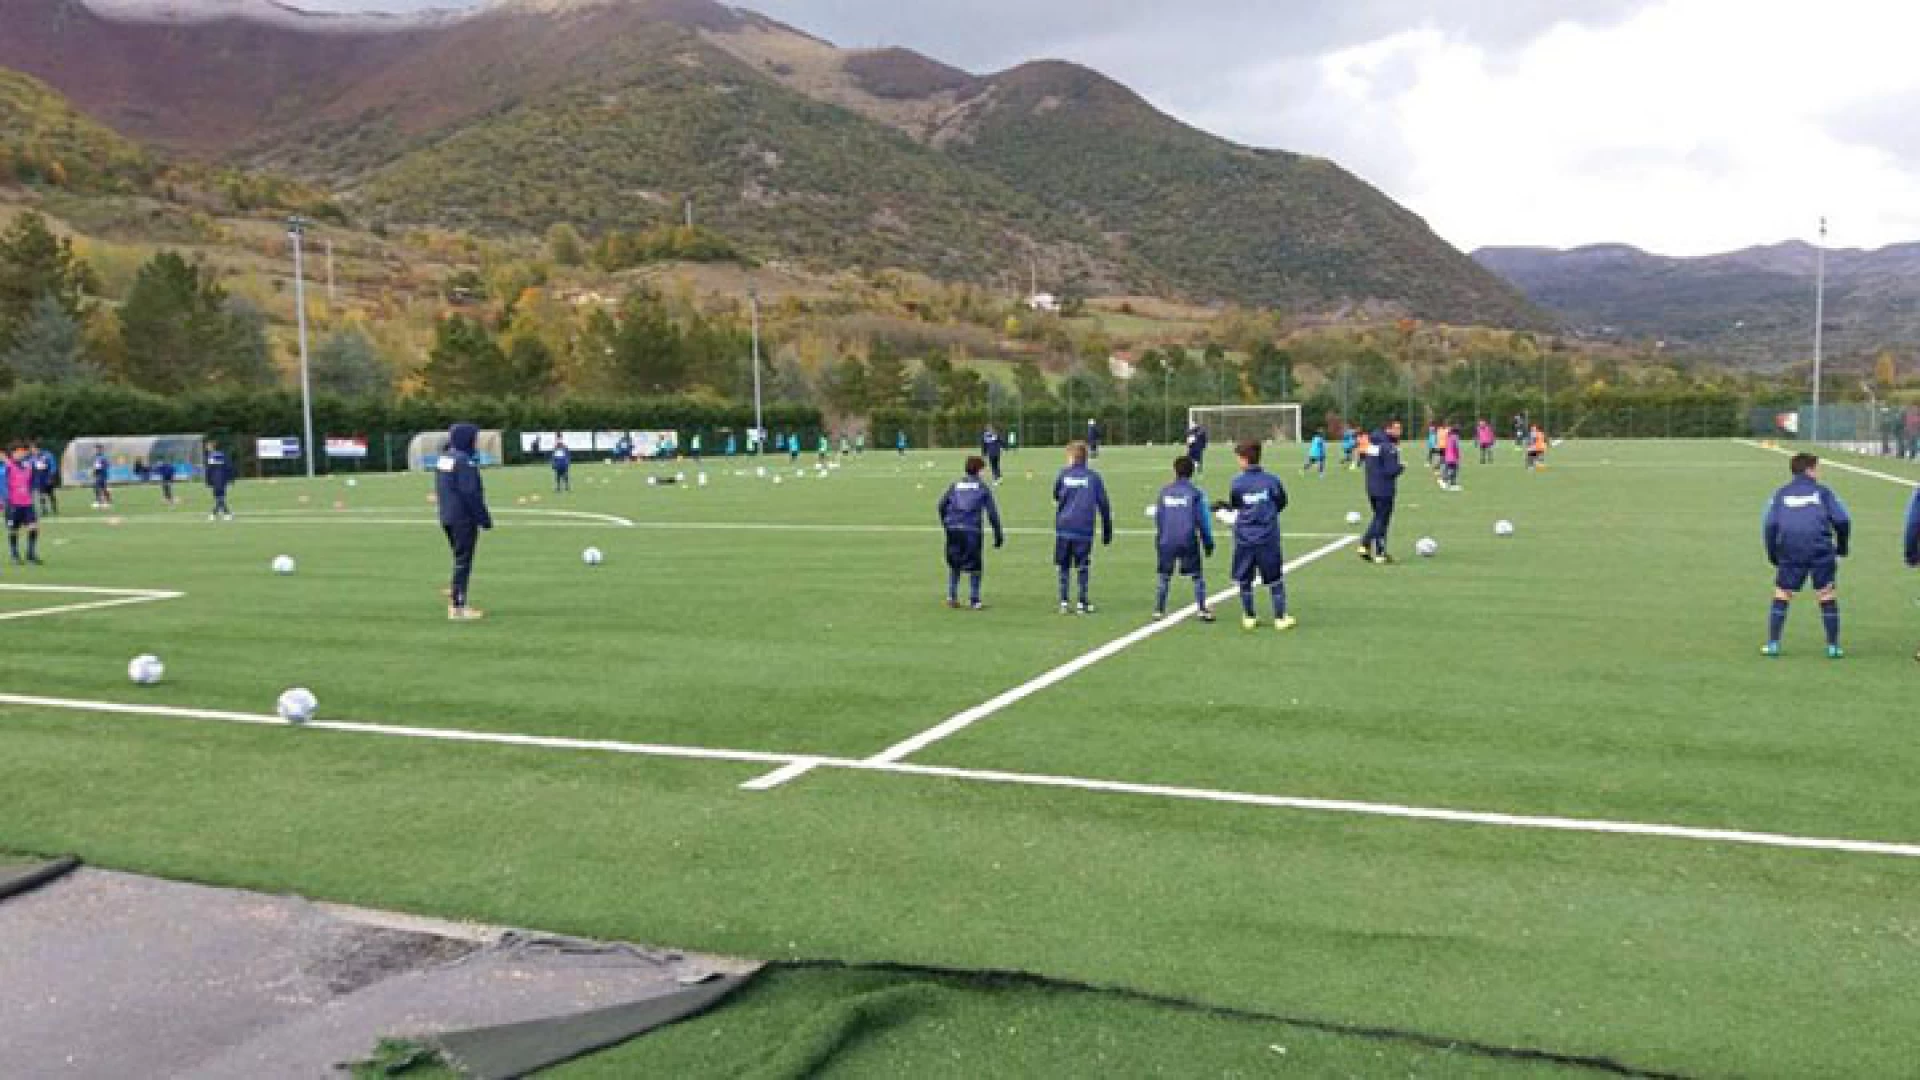 Calcio giovanile: centro federale territoriale di Castel Di Sangro, continua l’impegno dello staff dell’Asd Boys, Altri tesserati coinvolti negli incontri tecnici.